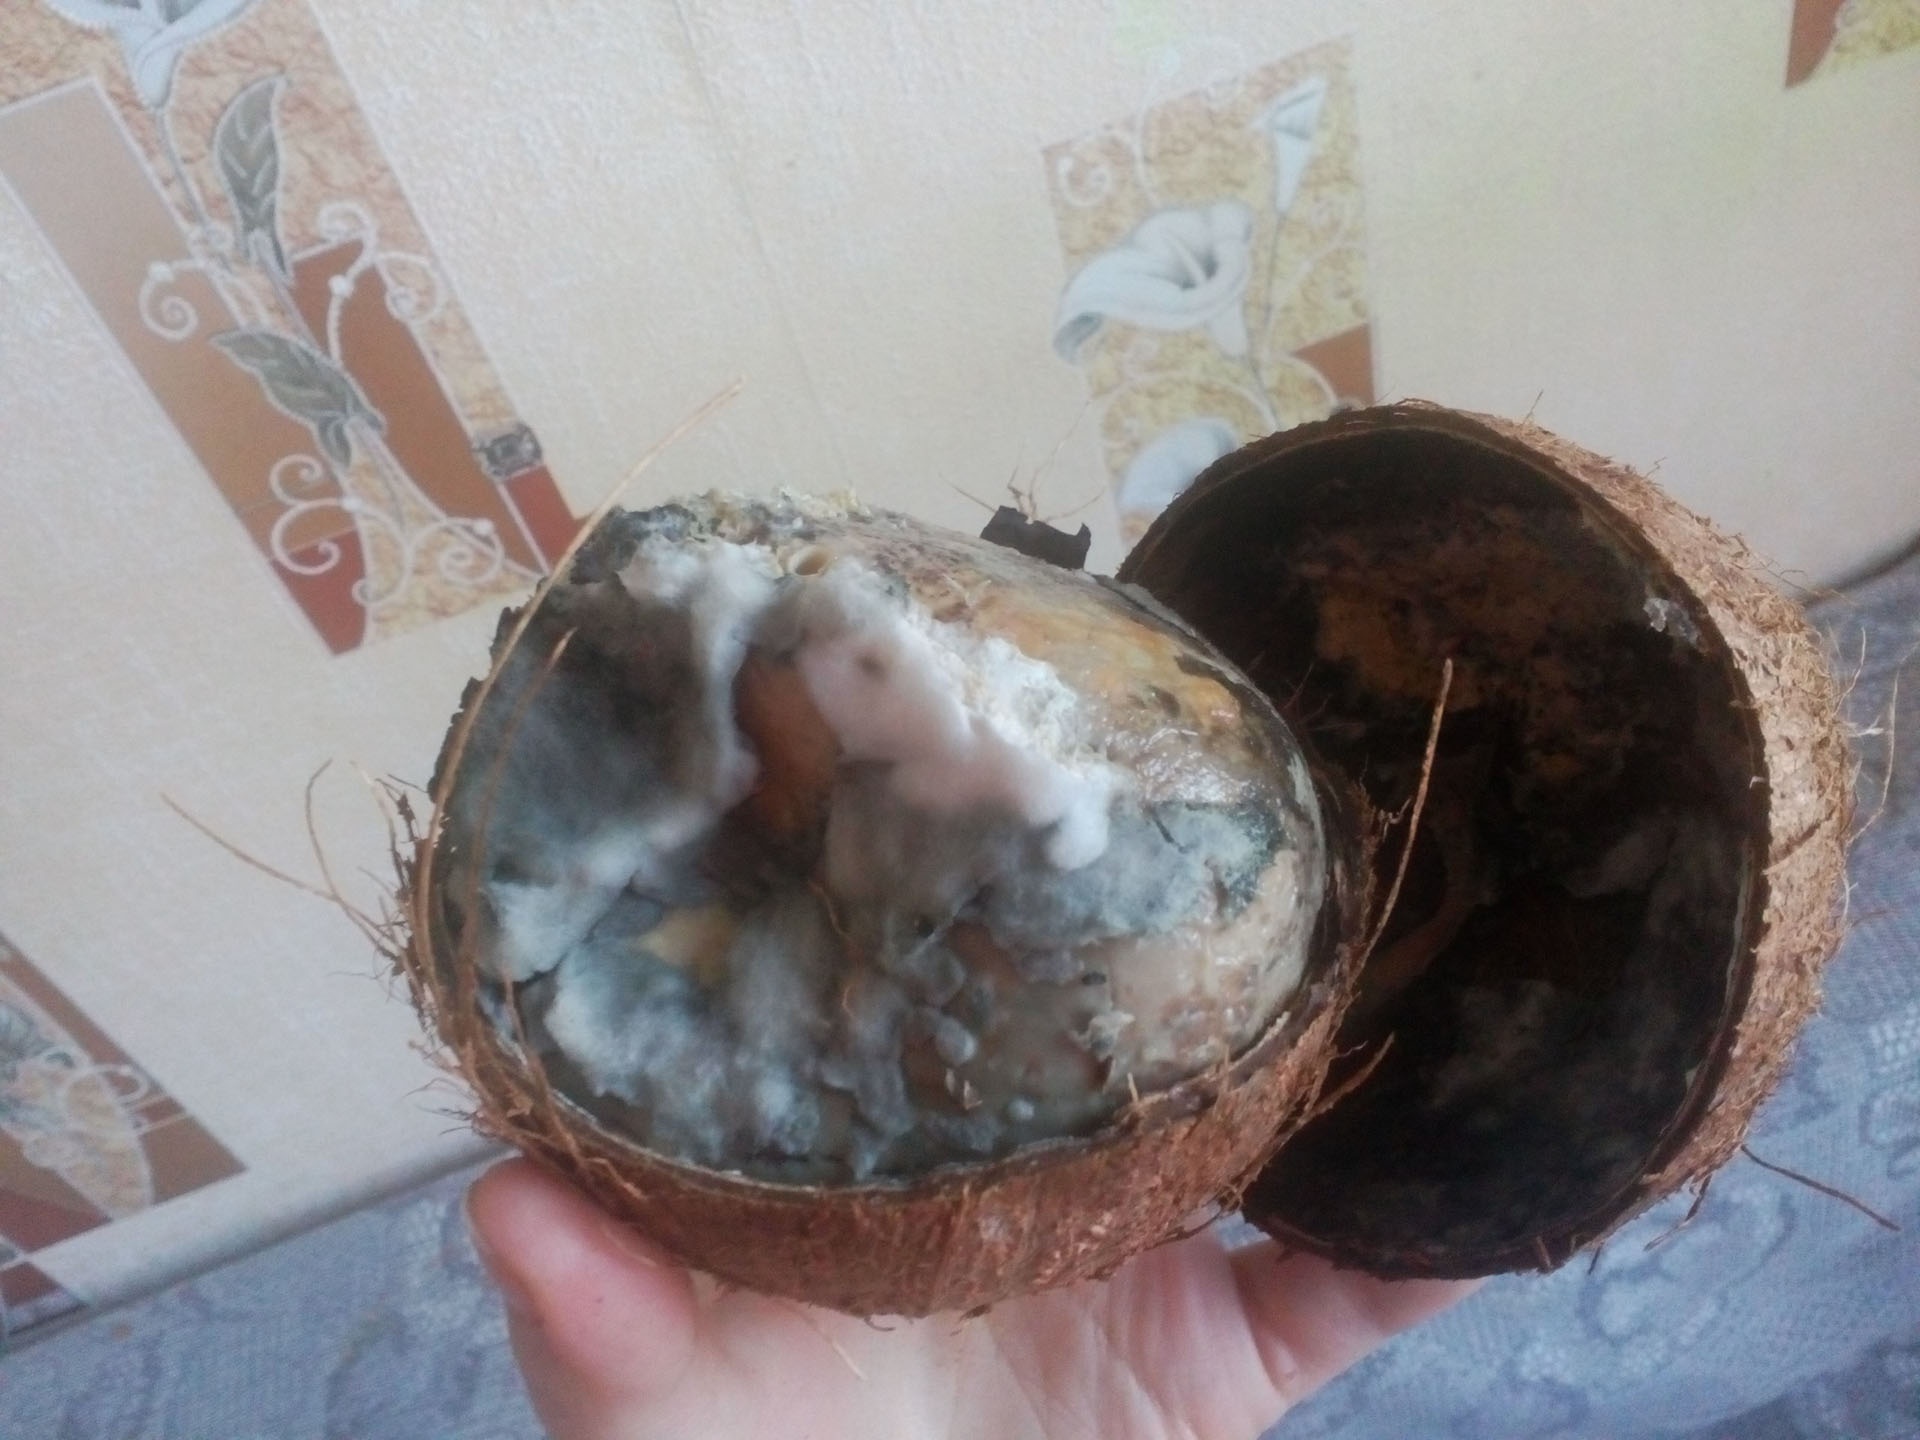 Архангелогородка Марина Кузнецова с иронией подытоживает: «А так кокосика хотелось...»